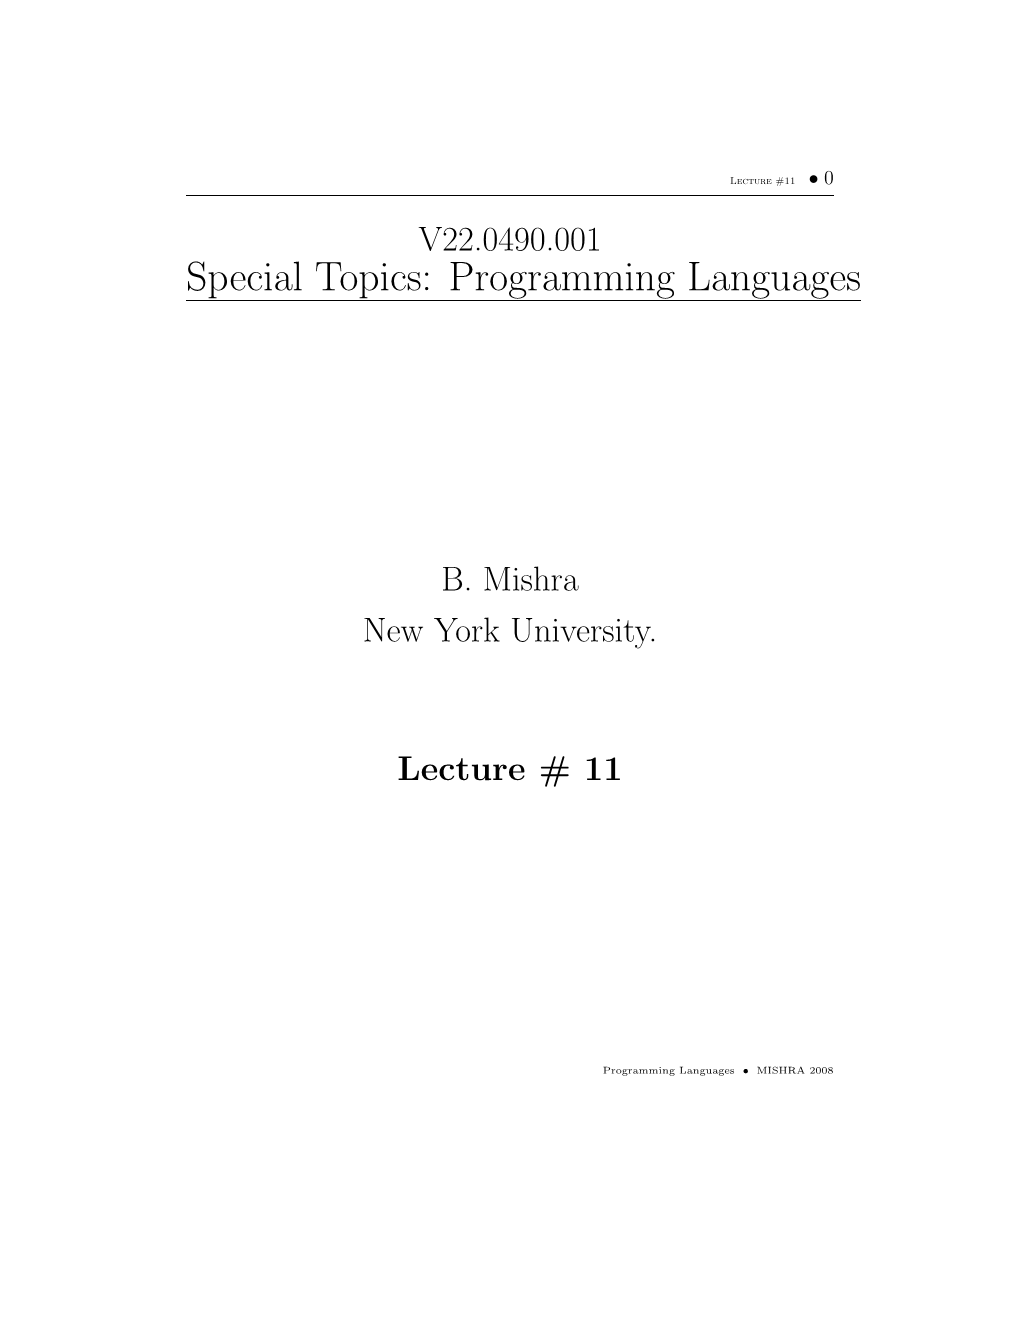 Special Topics: Programming Languages